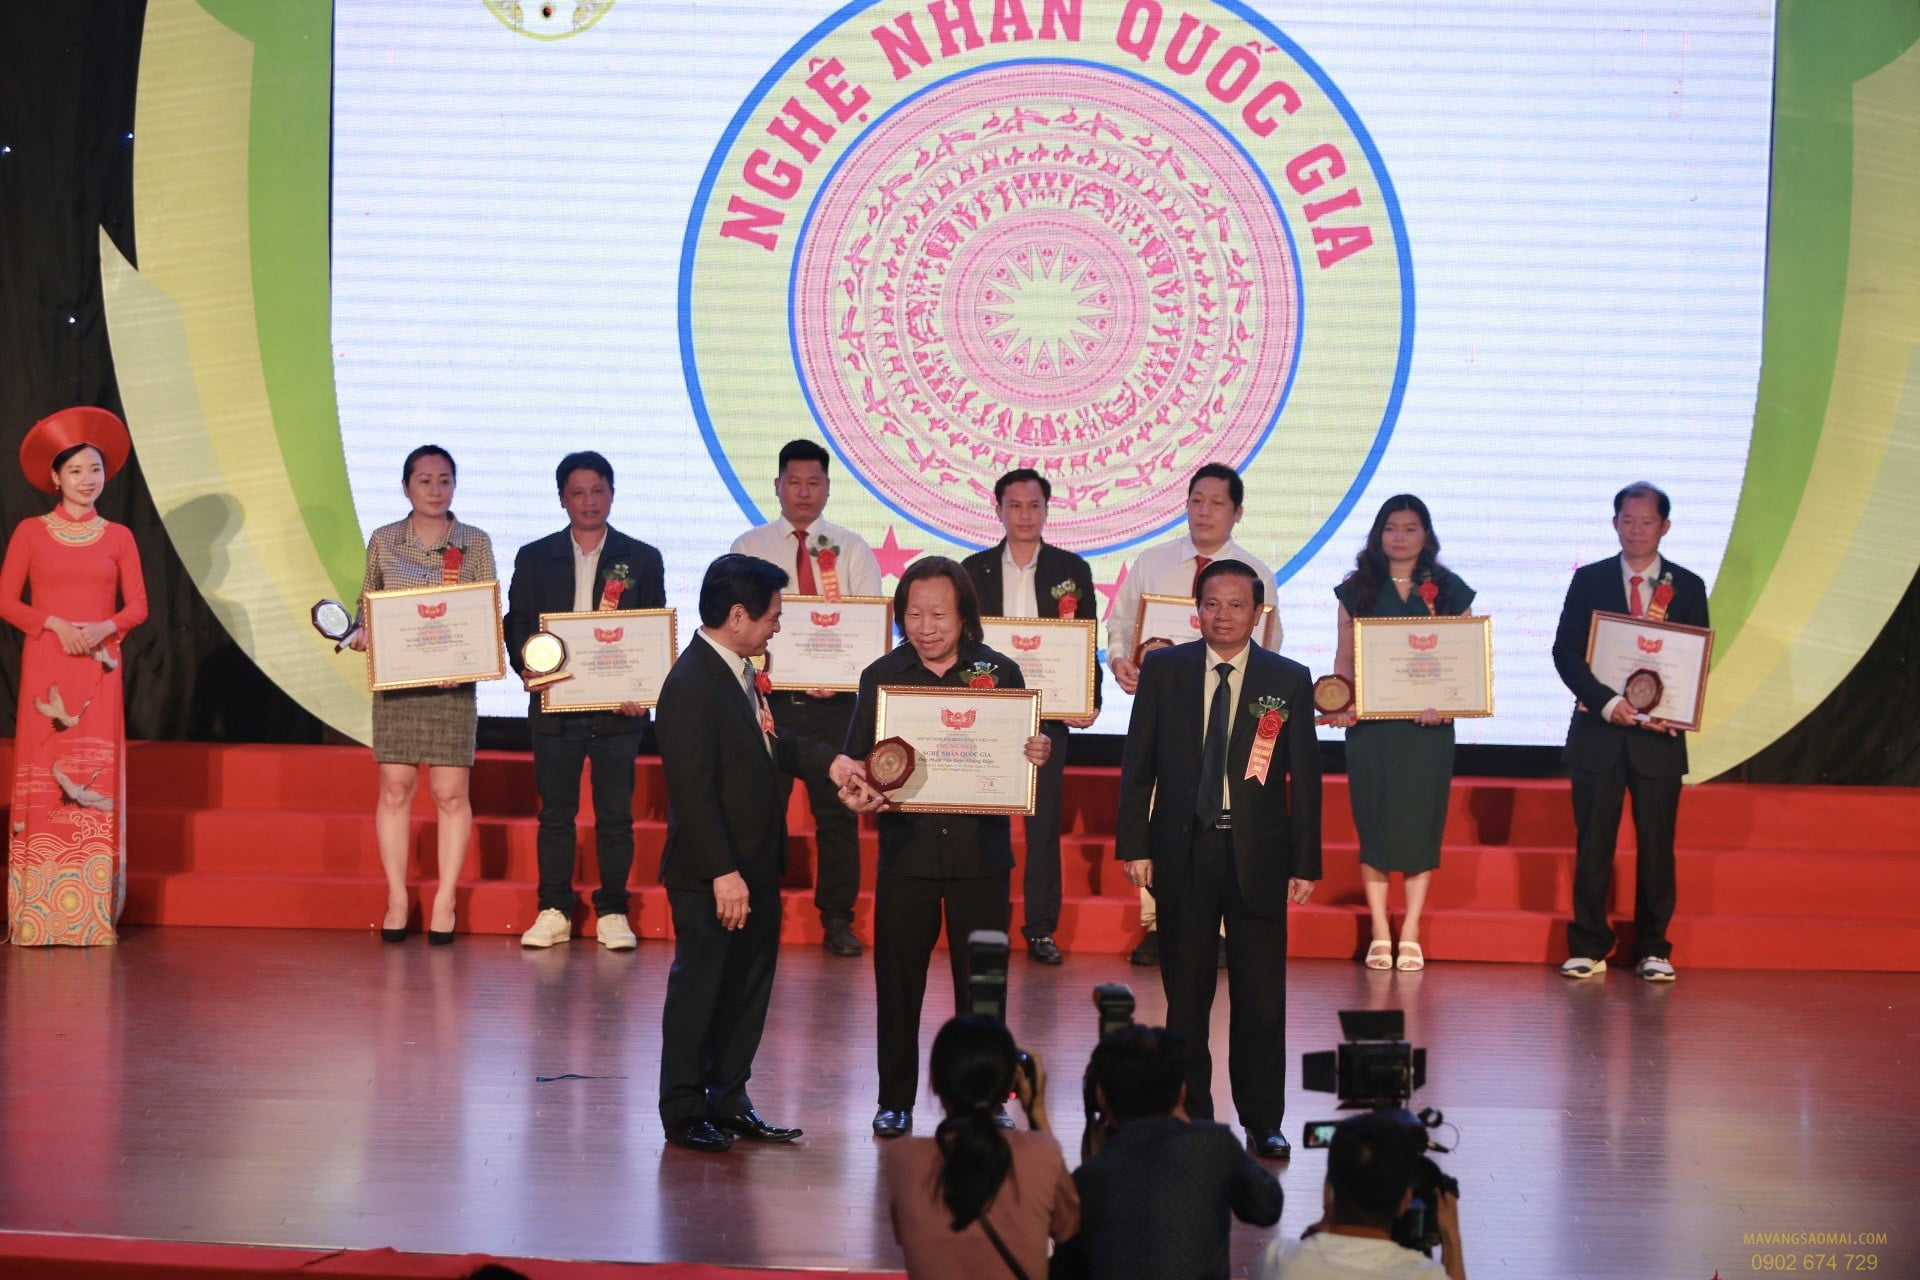 Nghệ nhân Phạm Hoàng Điệp vinh dự nhận danh hiệu Nghệ nhân Quốc gia năm 2022 do Hội Mỹ nghệ Kim hoàn Đá quý Việt Nam trao tặng.